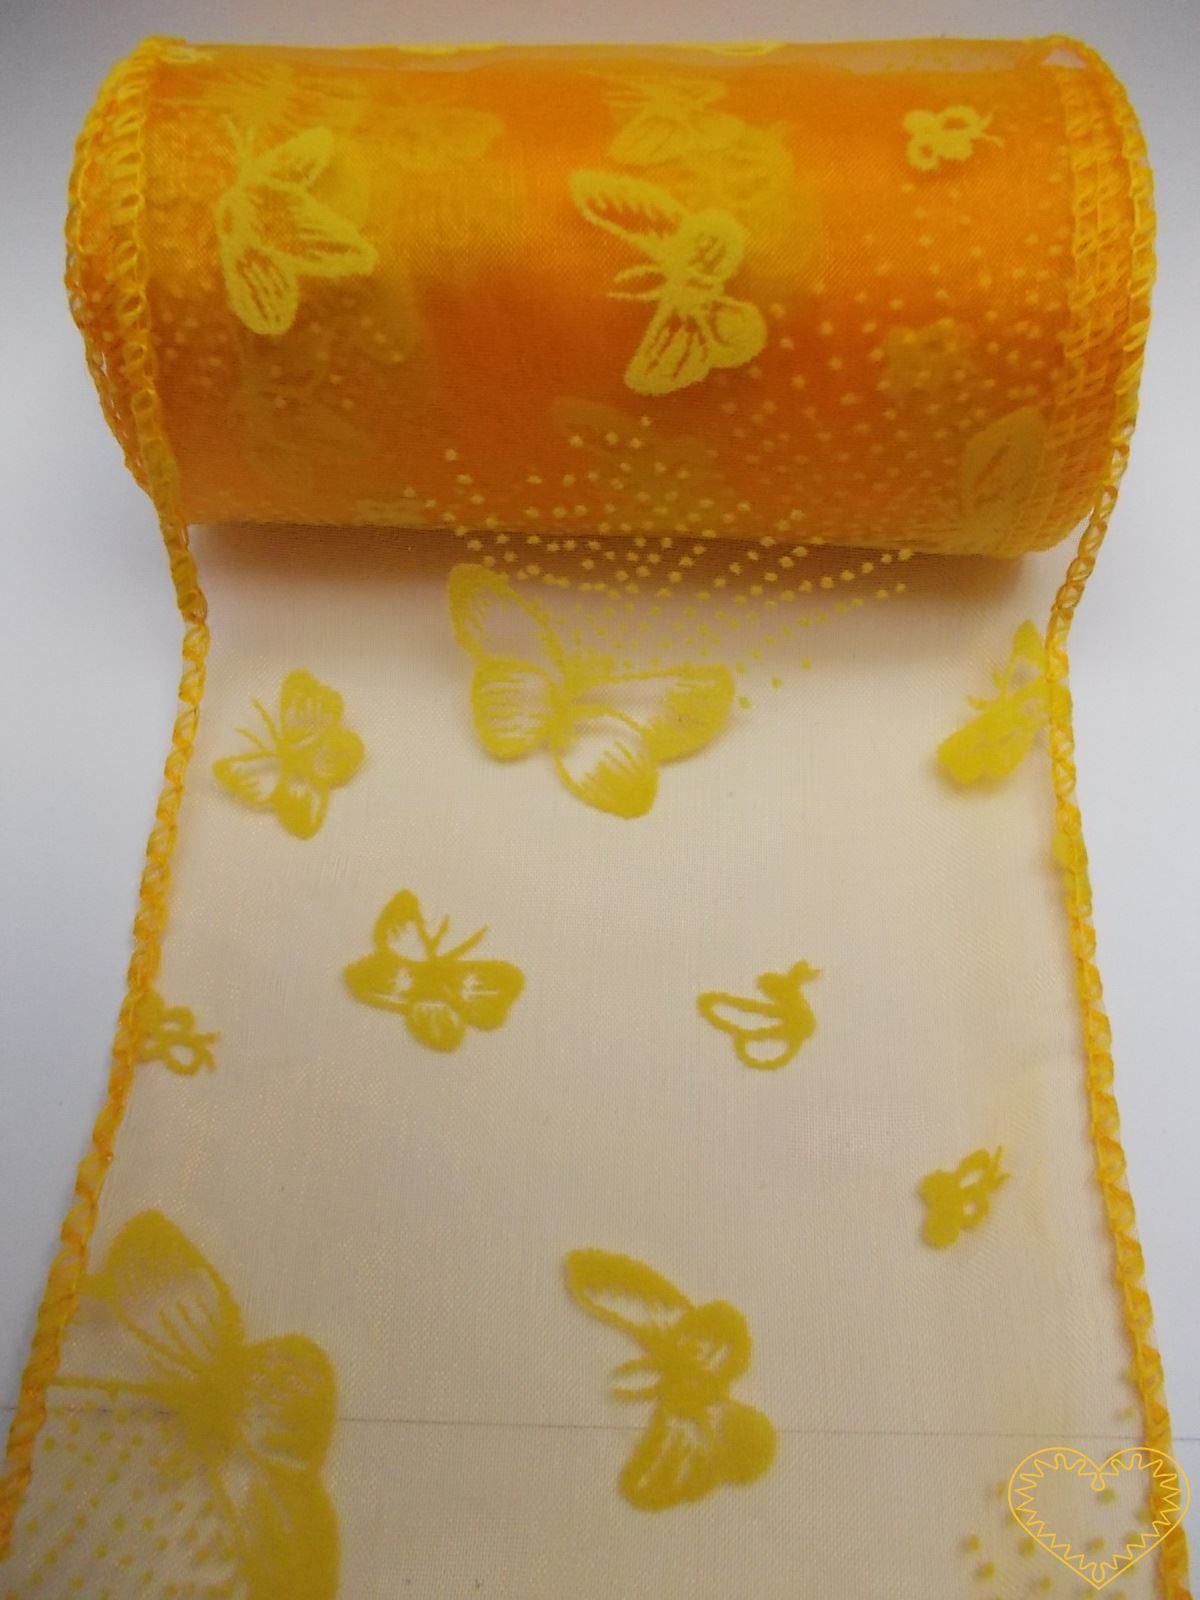 Organza oranžová se žlutými motýly - šíře 10 cm, délka 9,14 m, z obou stran obroubená. Organza má široké využítí - k dekoračním účelům, k šití, do květinových aranžmá, pro výzdobu slavnostní tabule, k balení dárků, jako mašle, na výrobu broží i další